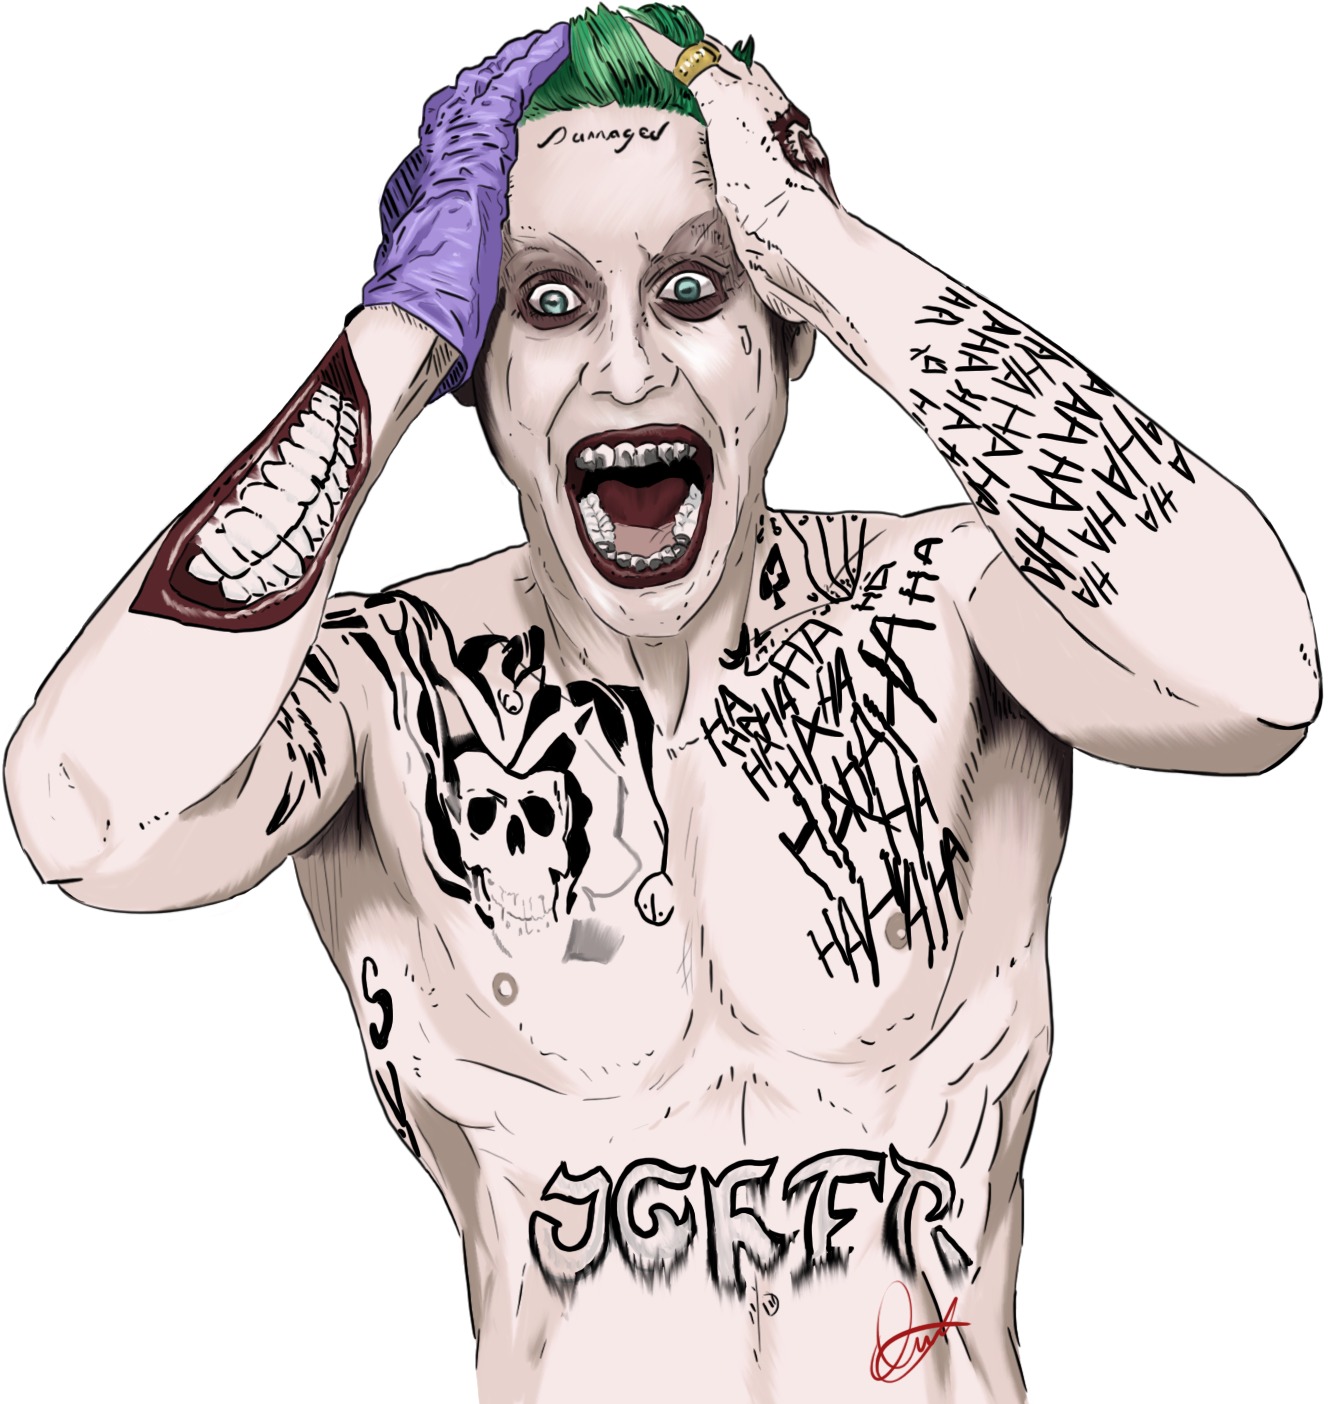 Joker Clown HQ Image Free PNG Image